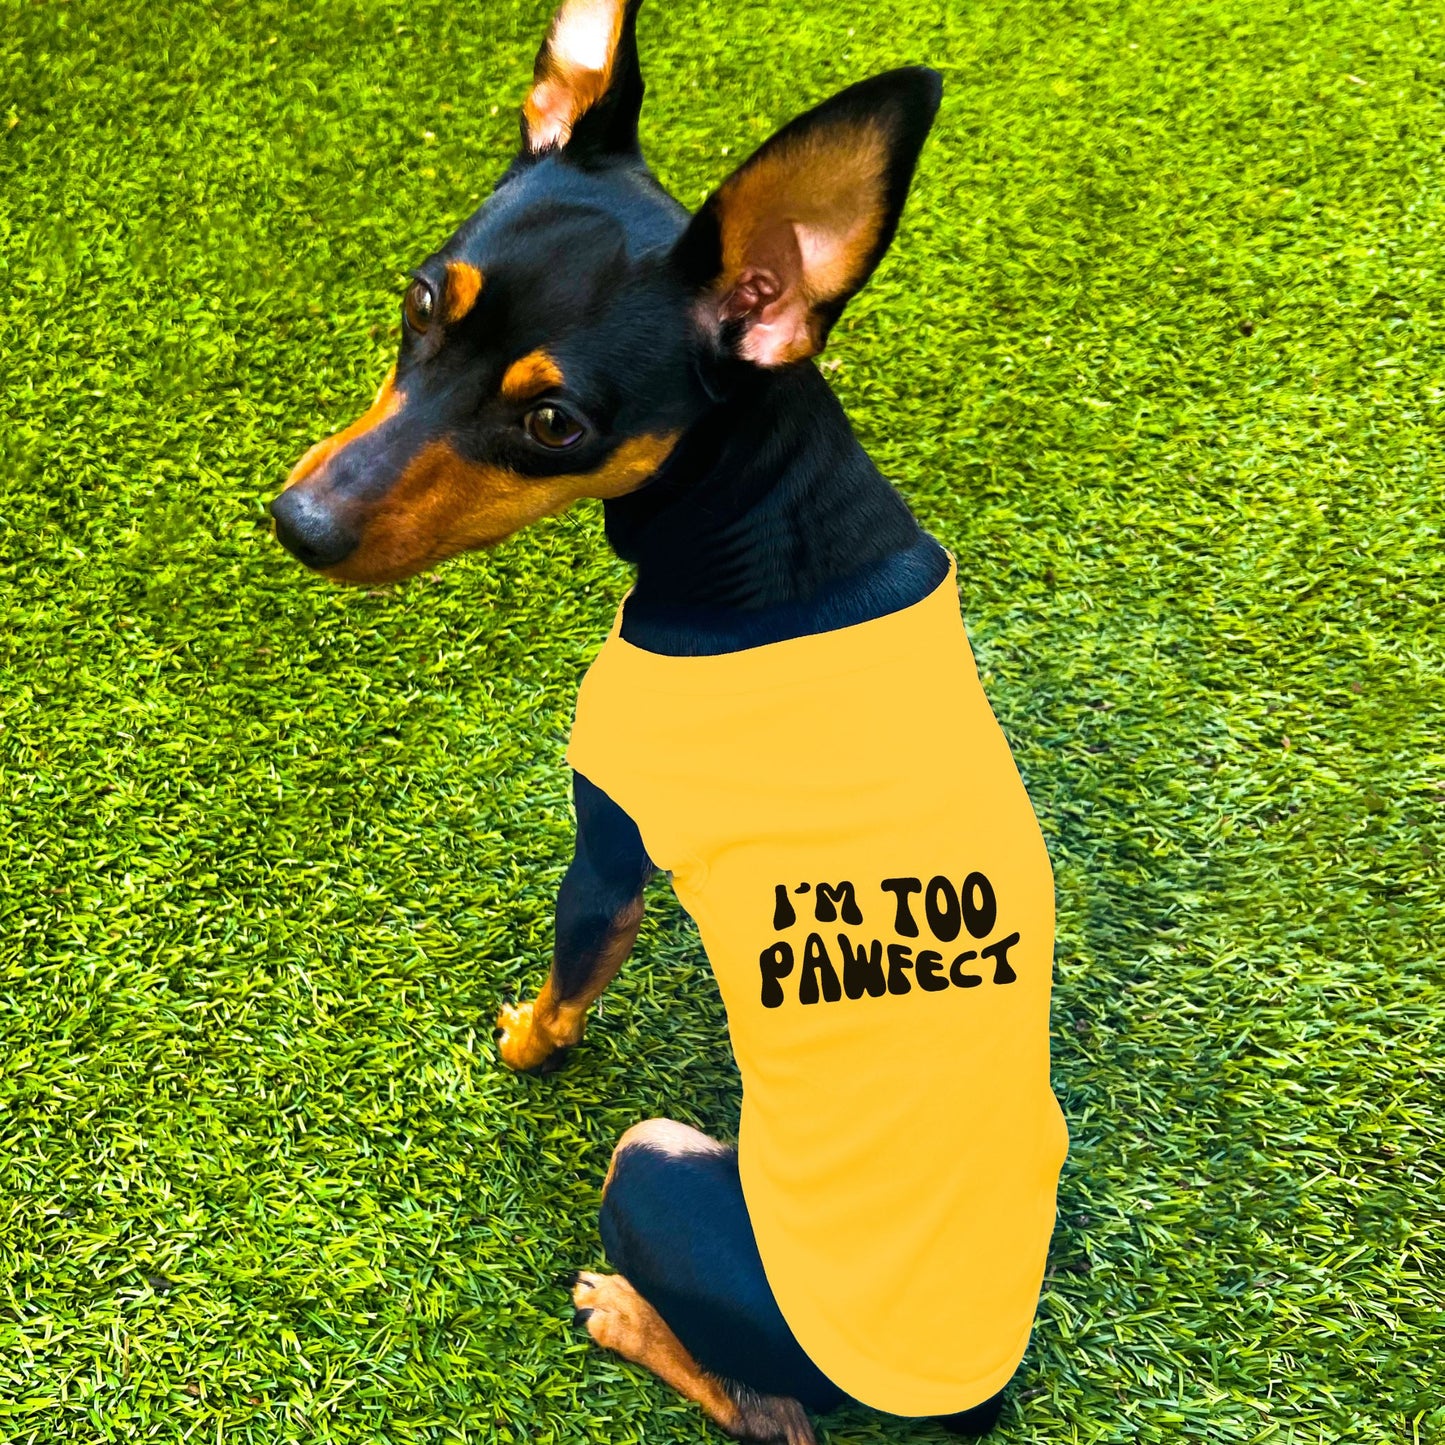 "I'm Too Pawfect" Dog Shirt